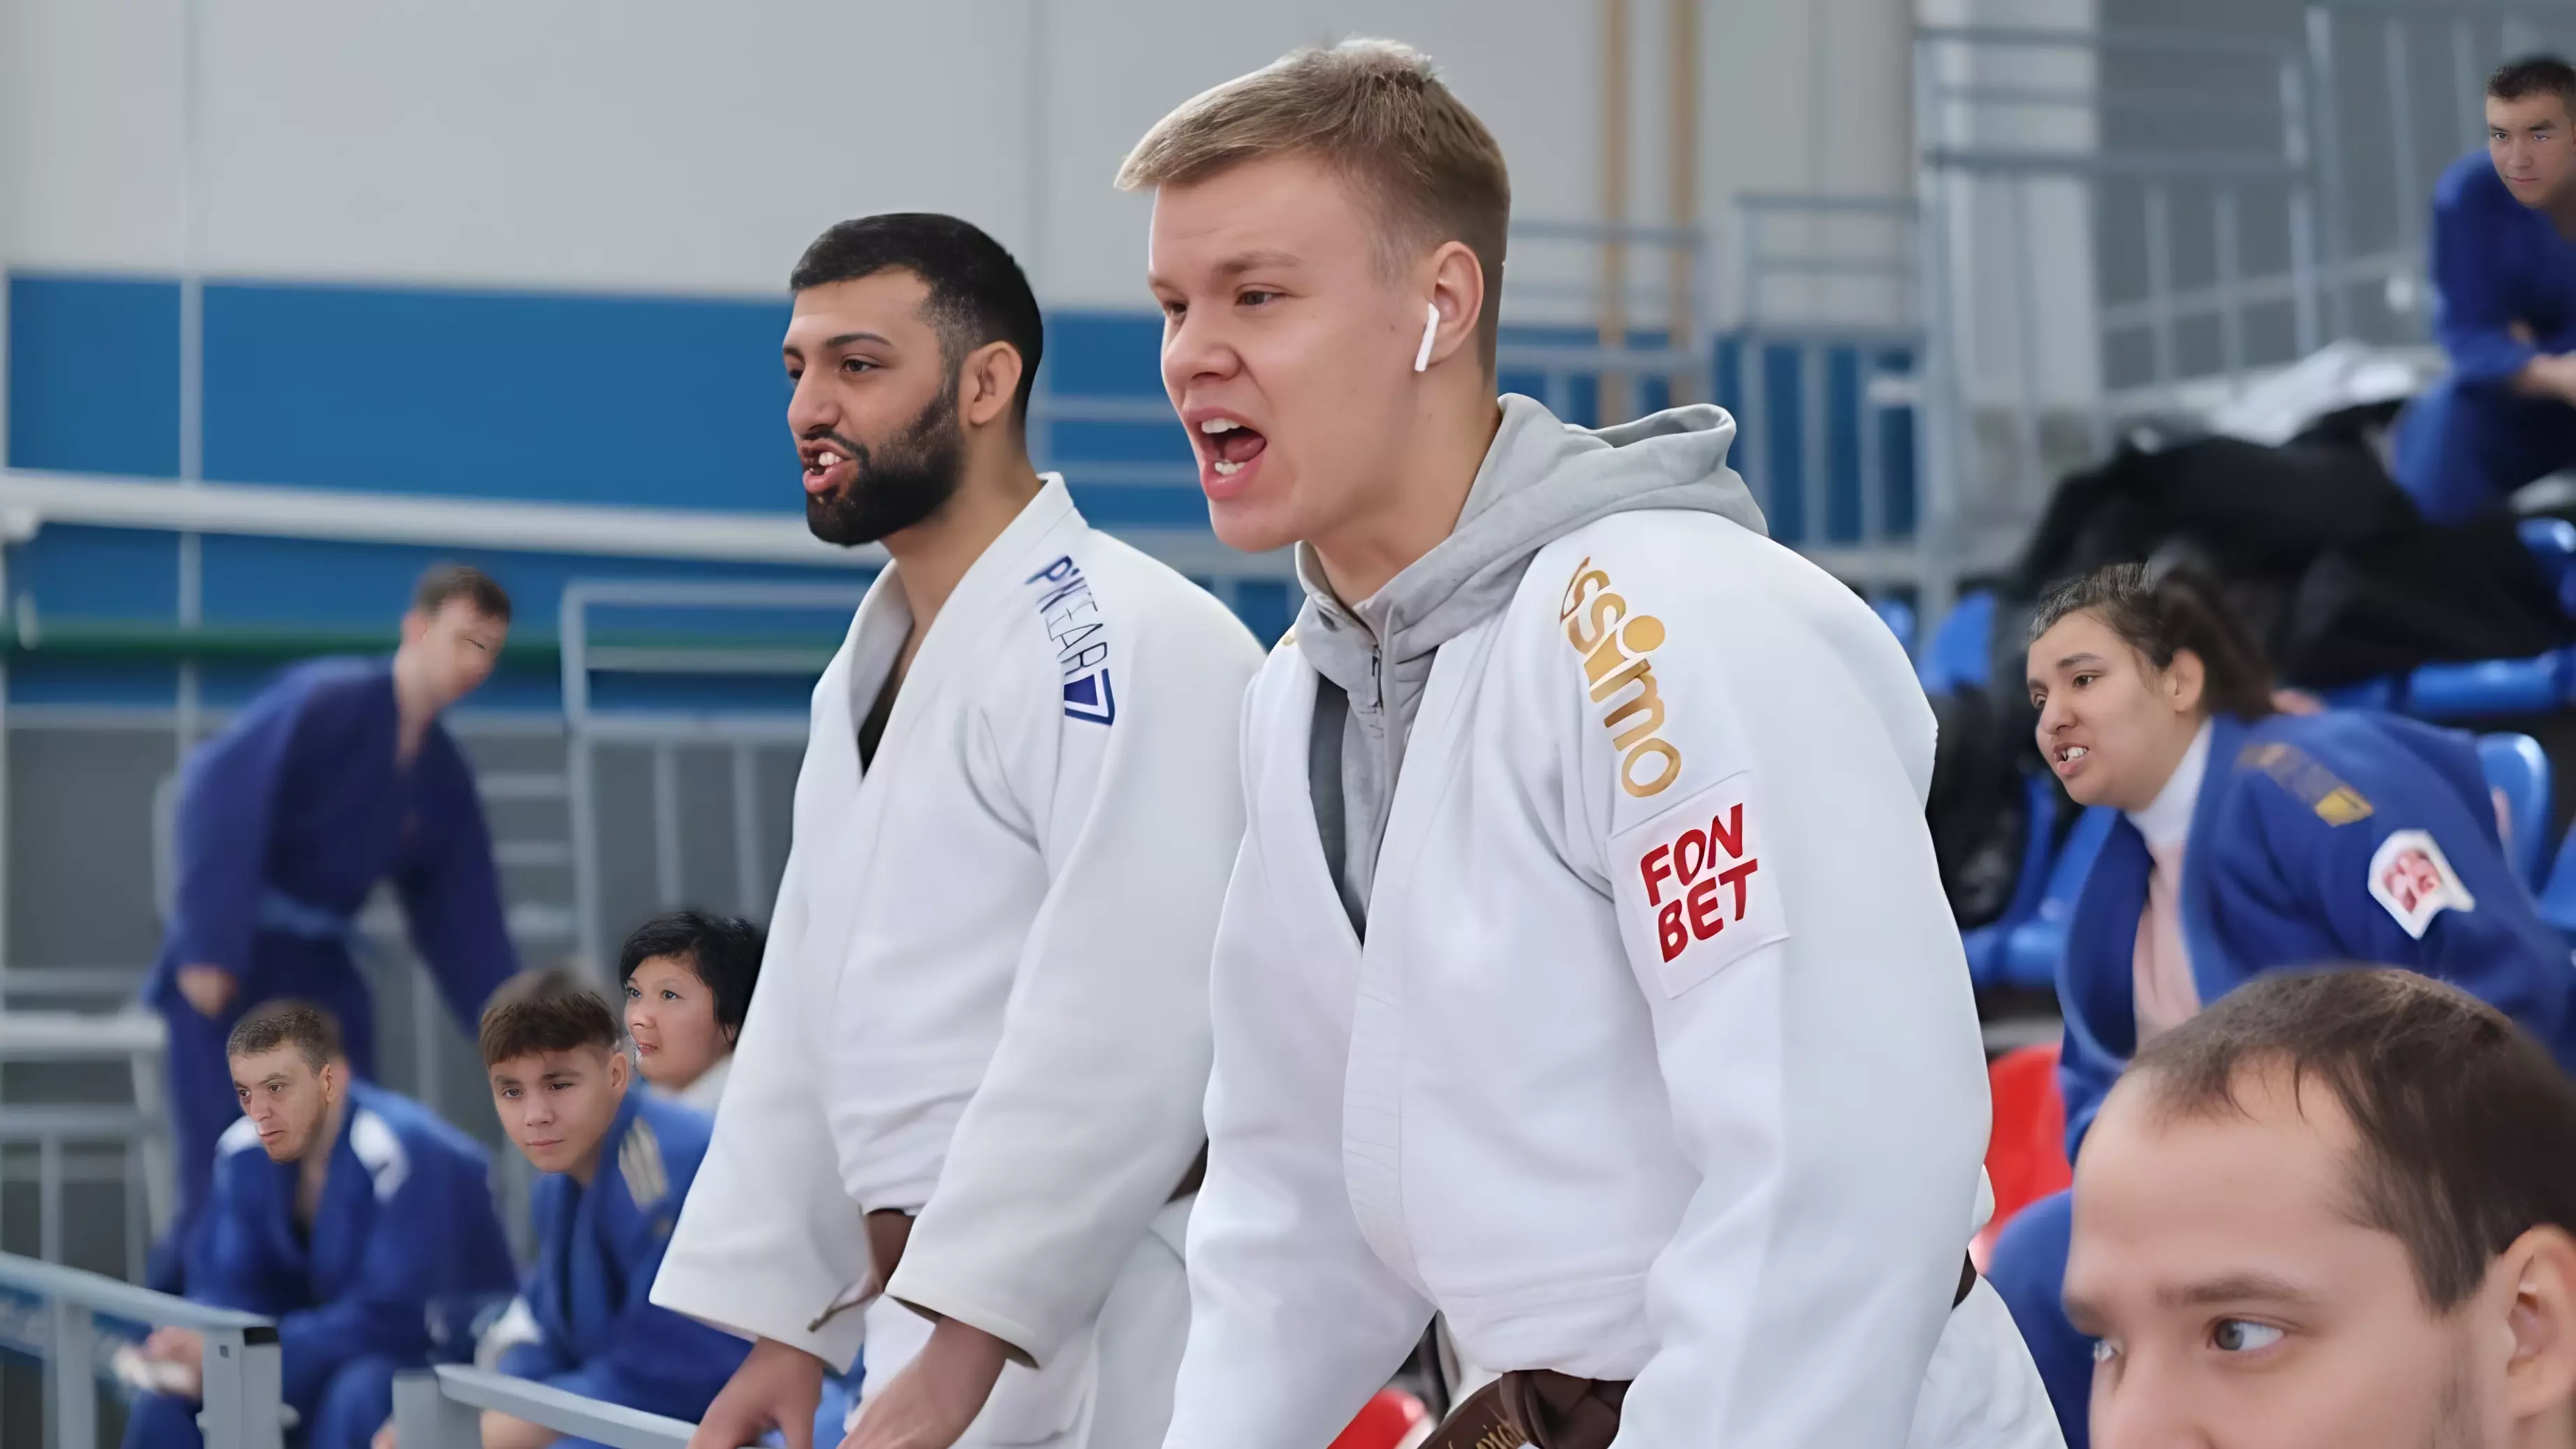 Десять медалей завоевали дзюдоисты региона на Дальневосточном первенстве в Хабаровске